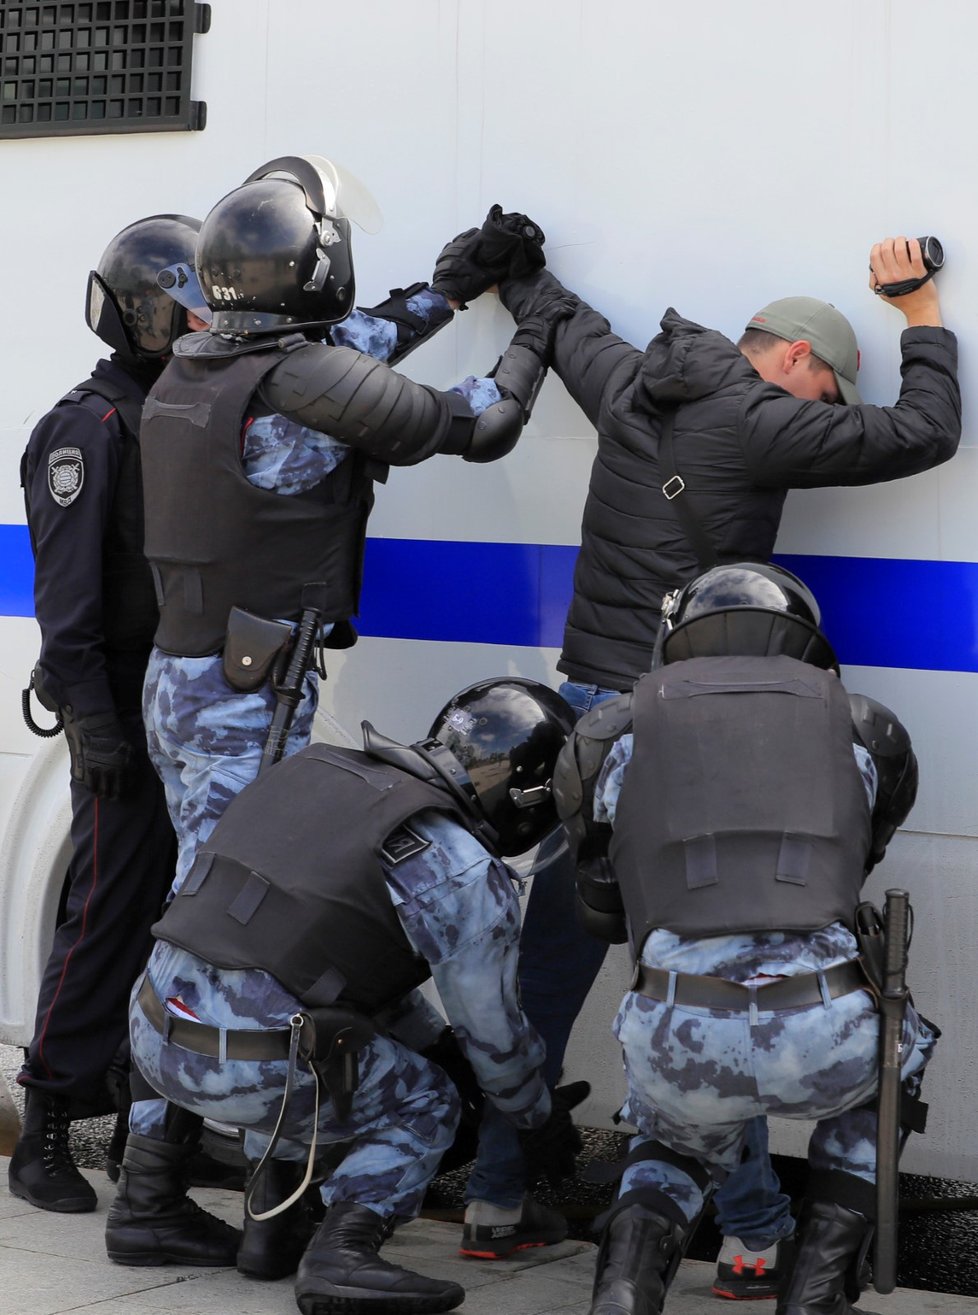 Policie zatkla přes 300 účastníků opoziční demonstrace v Moskvě (3. 8. 2019)